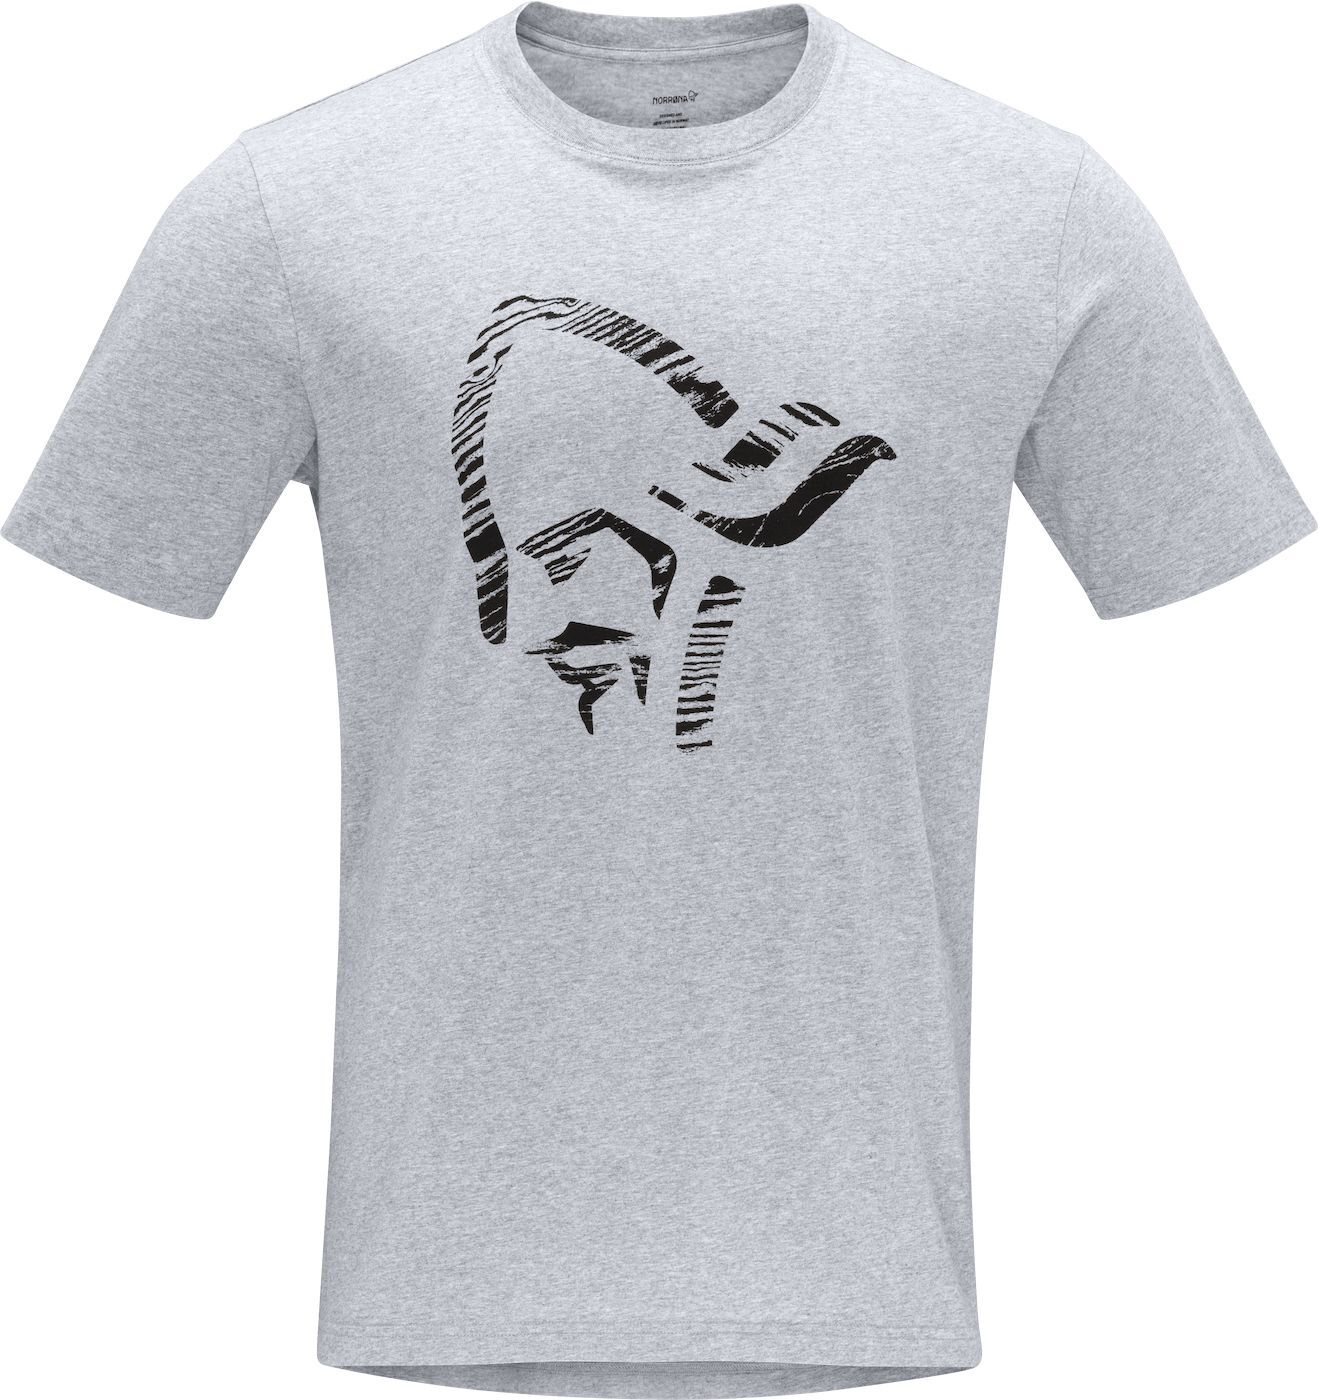 Norrona /29 Cotton Wood Viking T-Shirt - T-shirt - Herrer